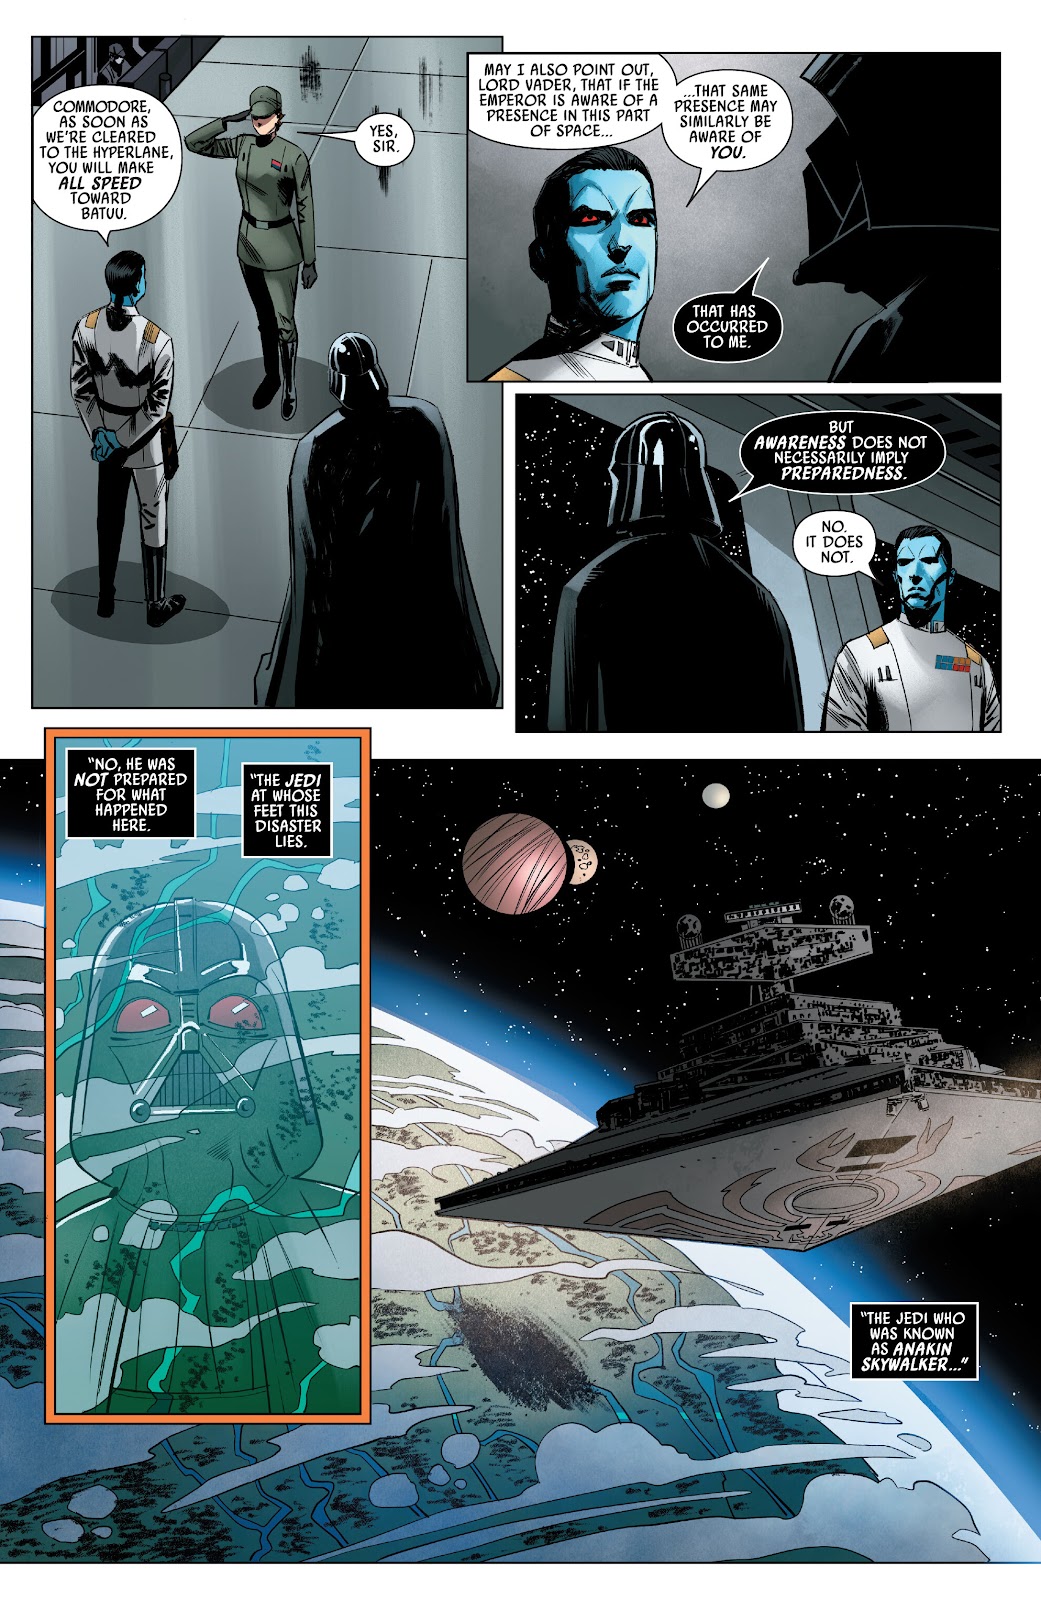 Star Wars: Thrawn - Alliances issue 1 - Page 15